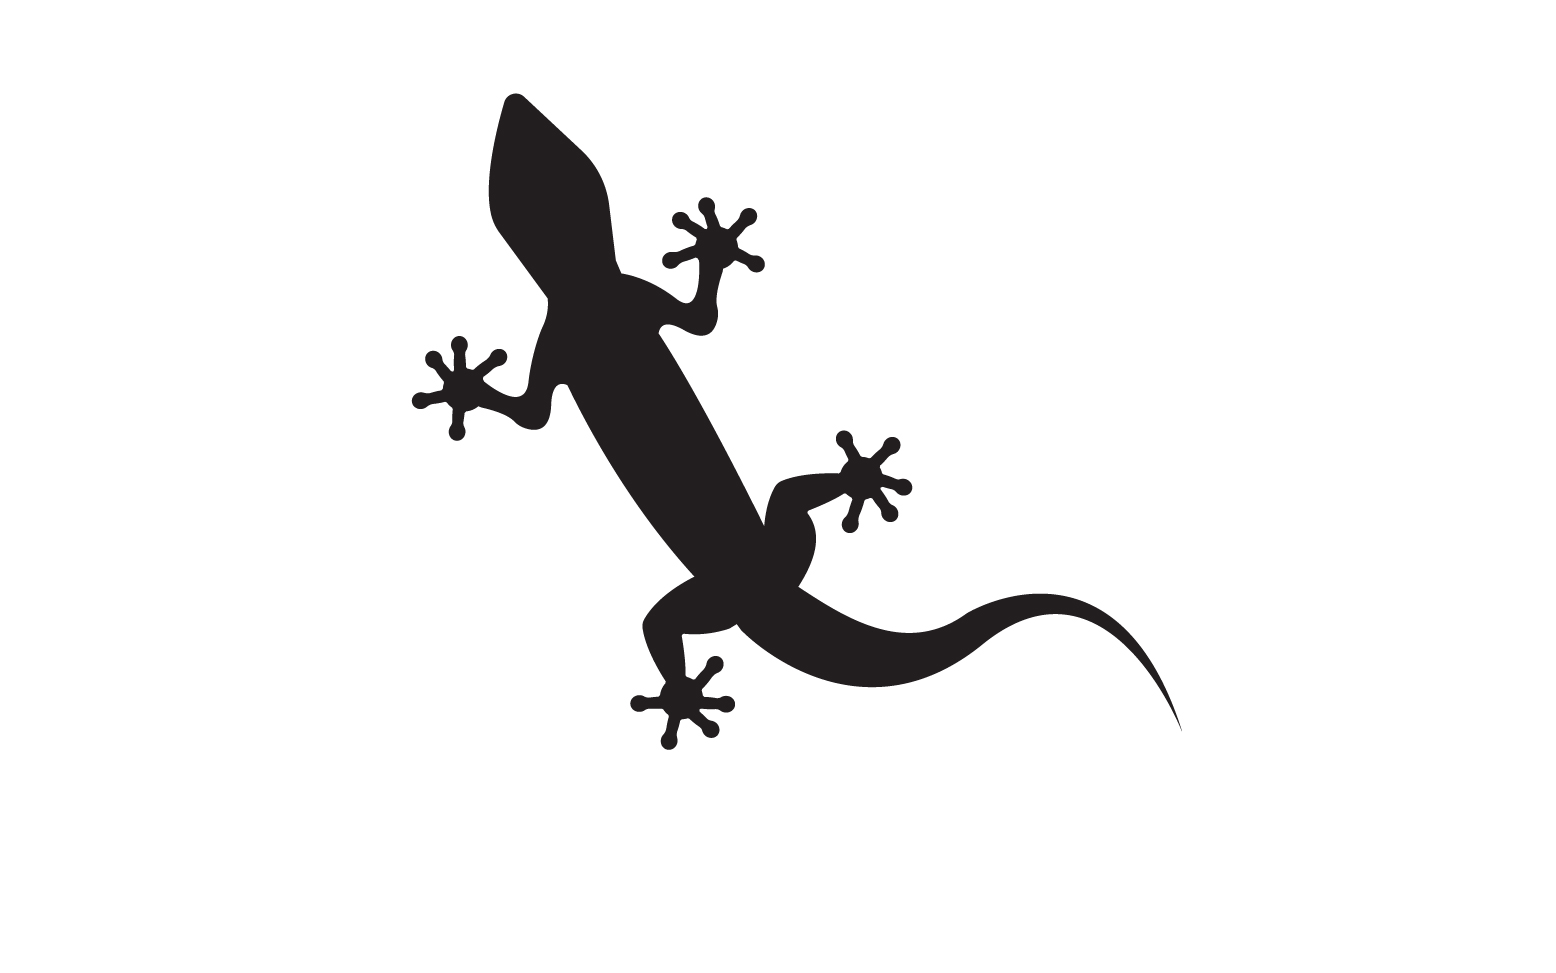 Lizard chameleon home lizard logo v25